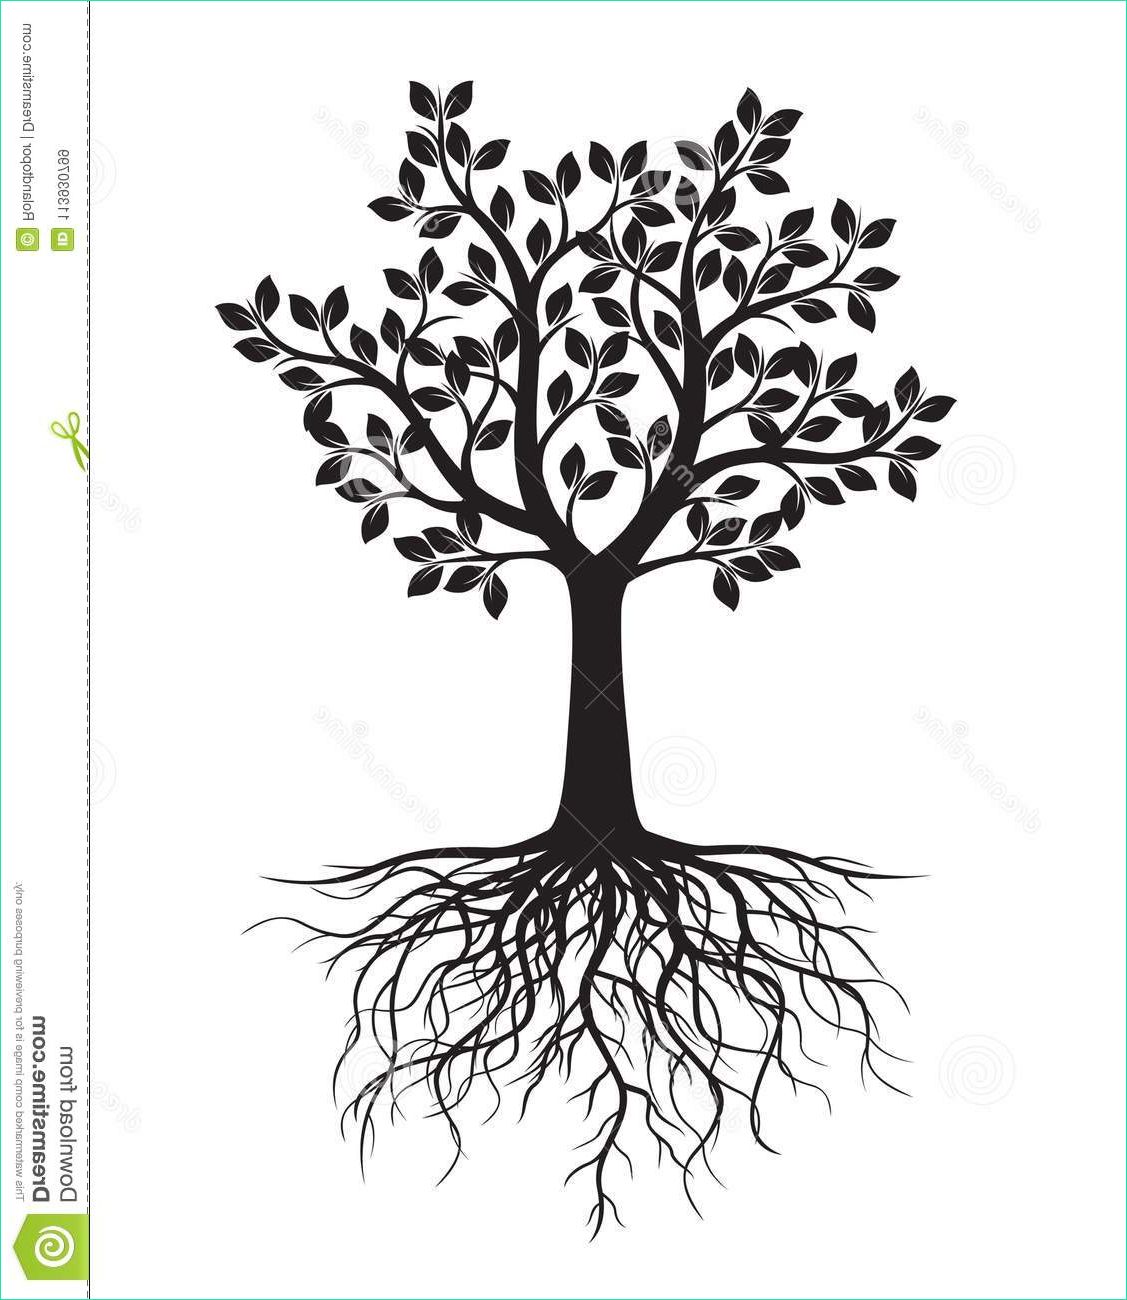 black tree leaves roots vector illustration graphic element black tree leaves roots image